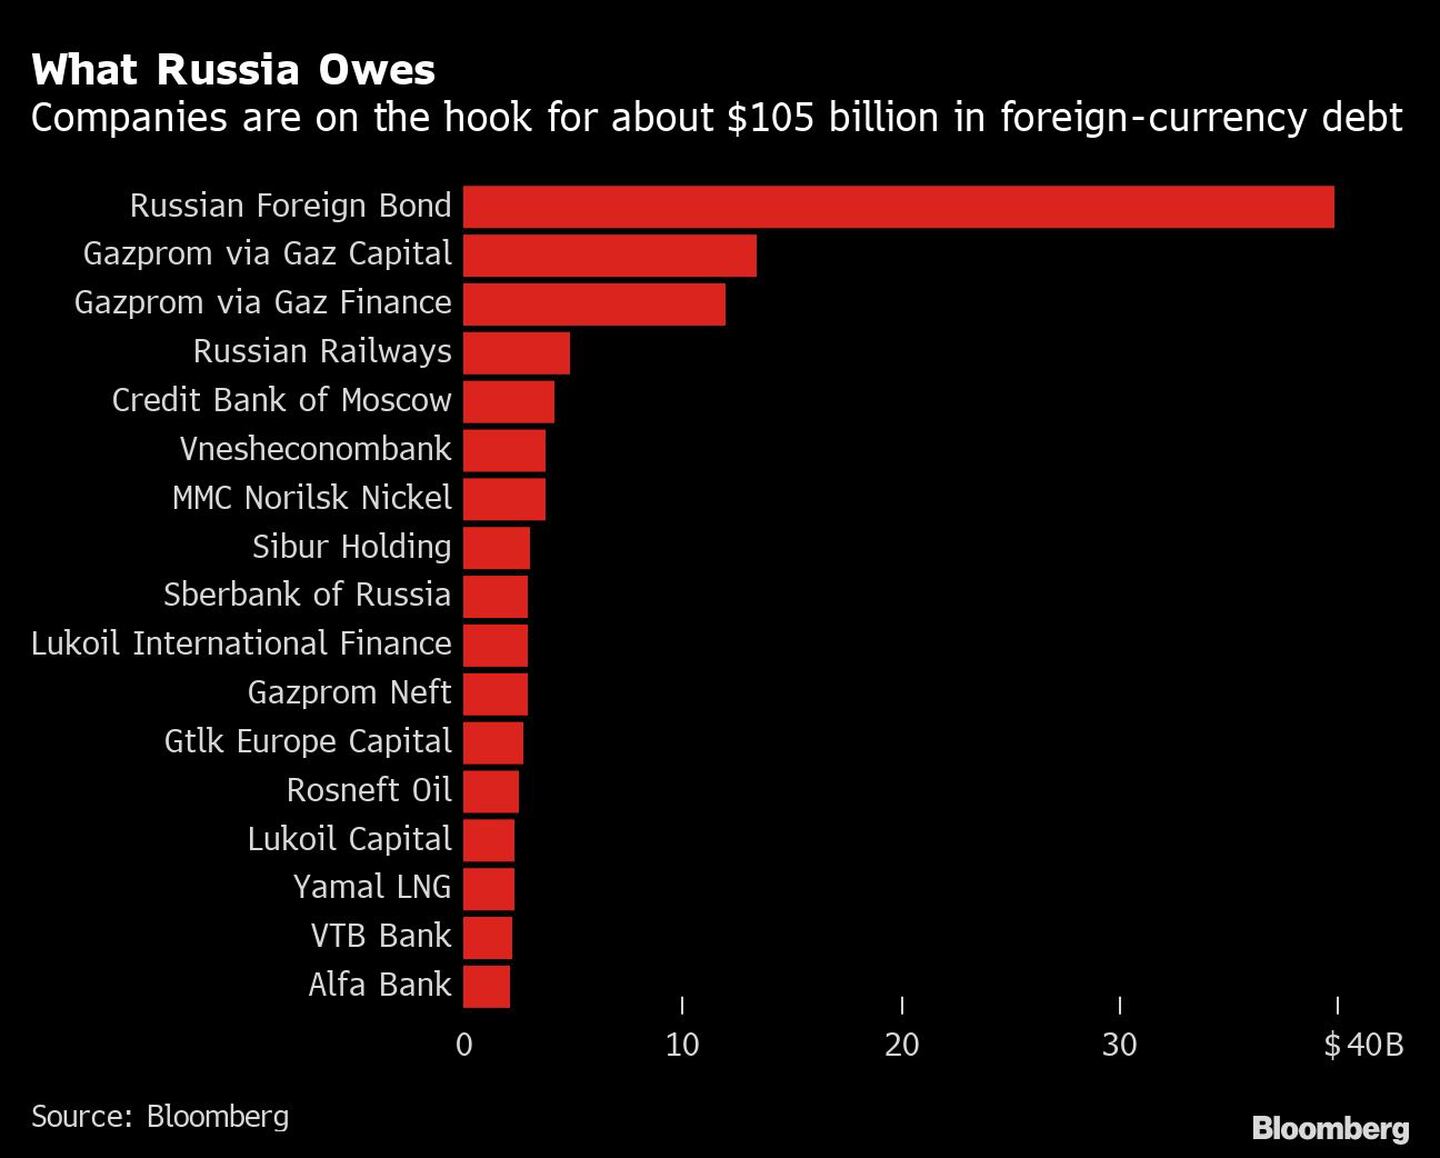 Lo que debe Rusia
Las empresas tienen que pagar unos US$105.000 millones de deuda en moneda extranjeradfd